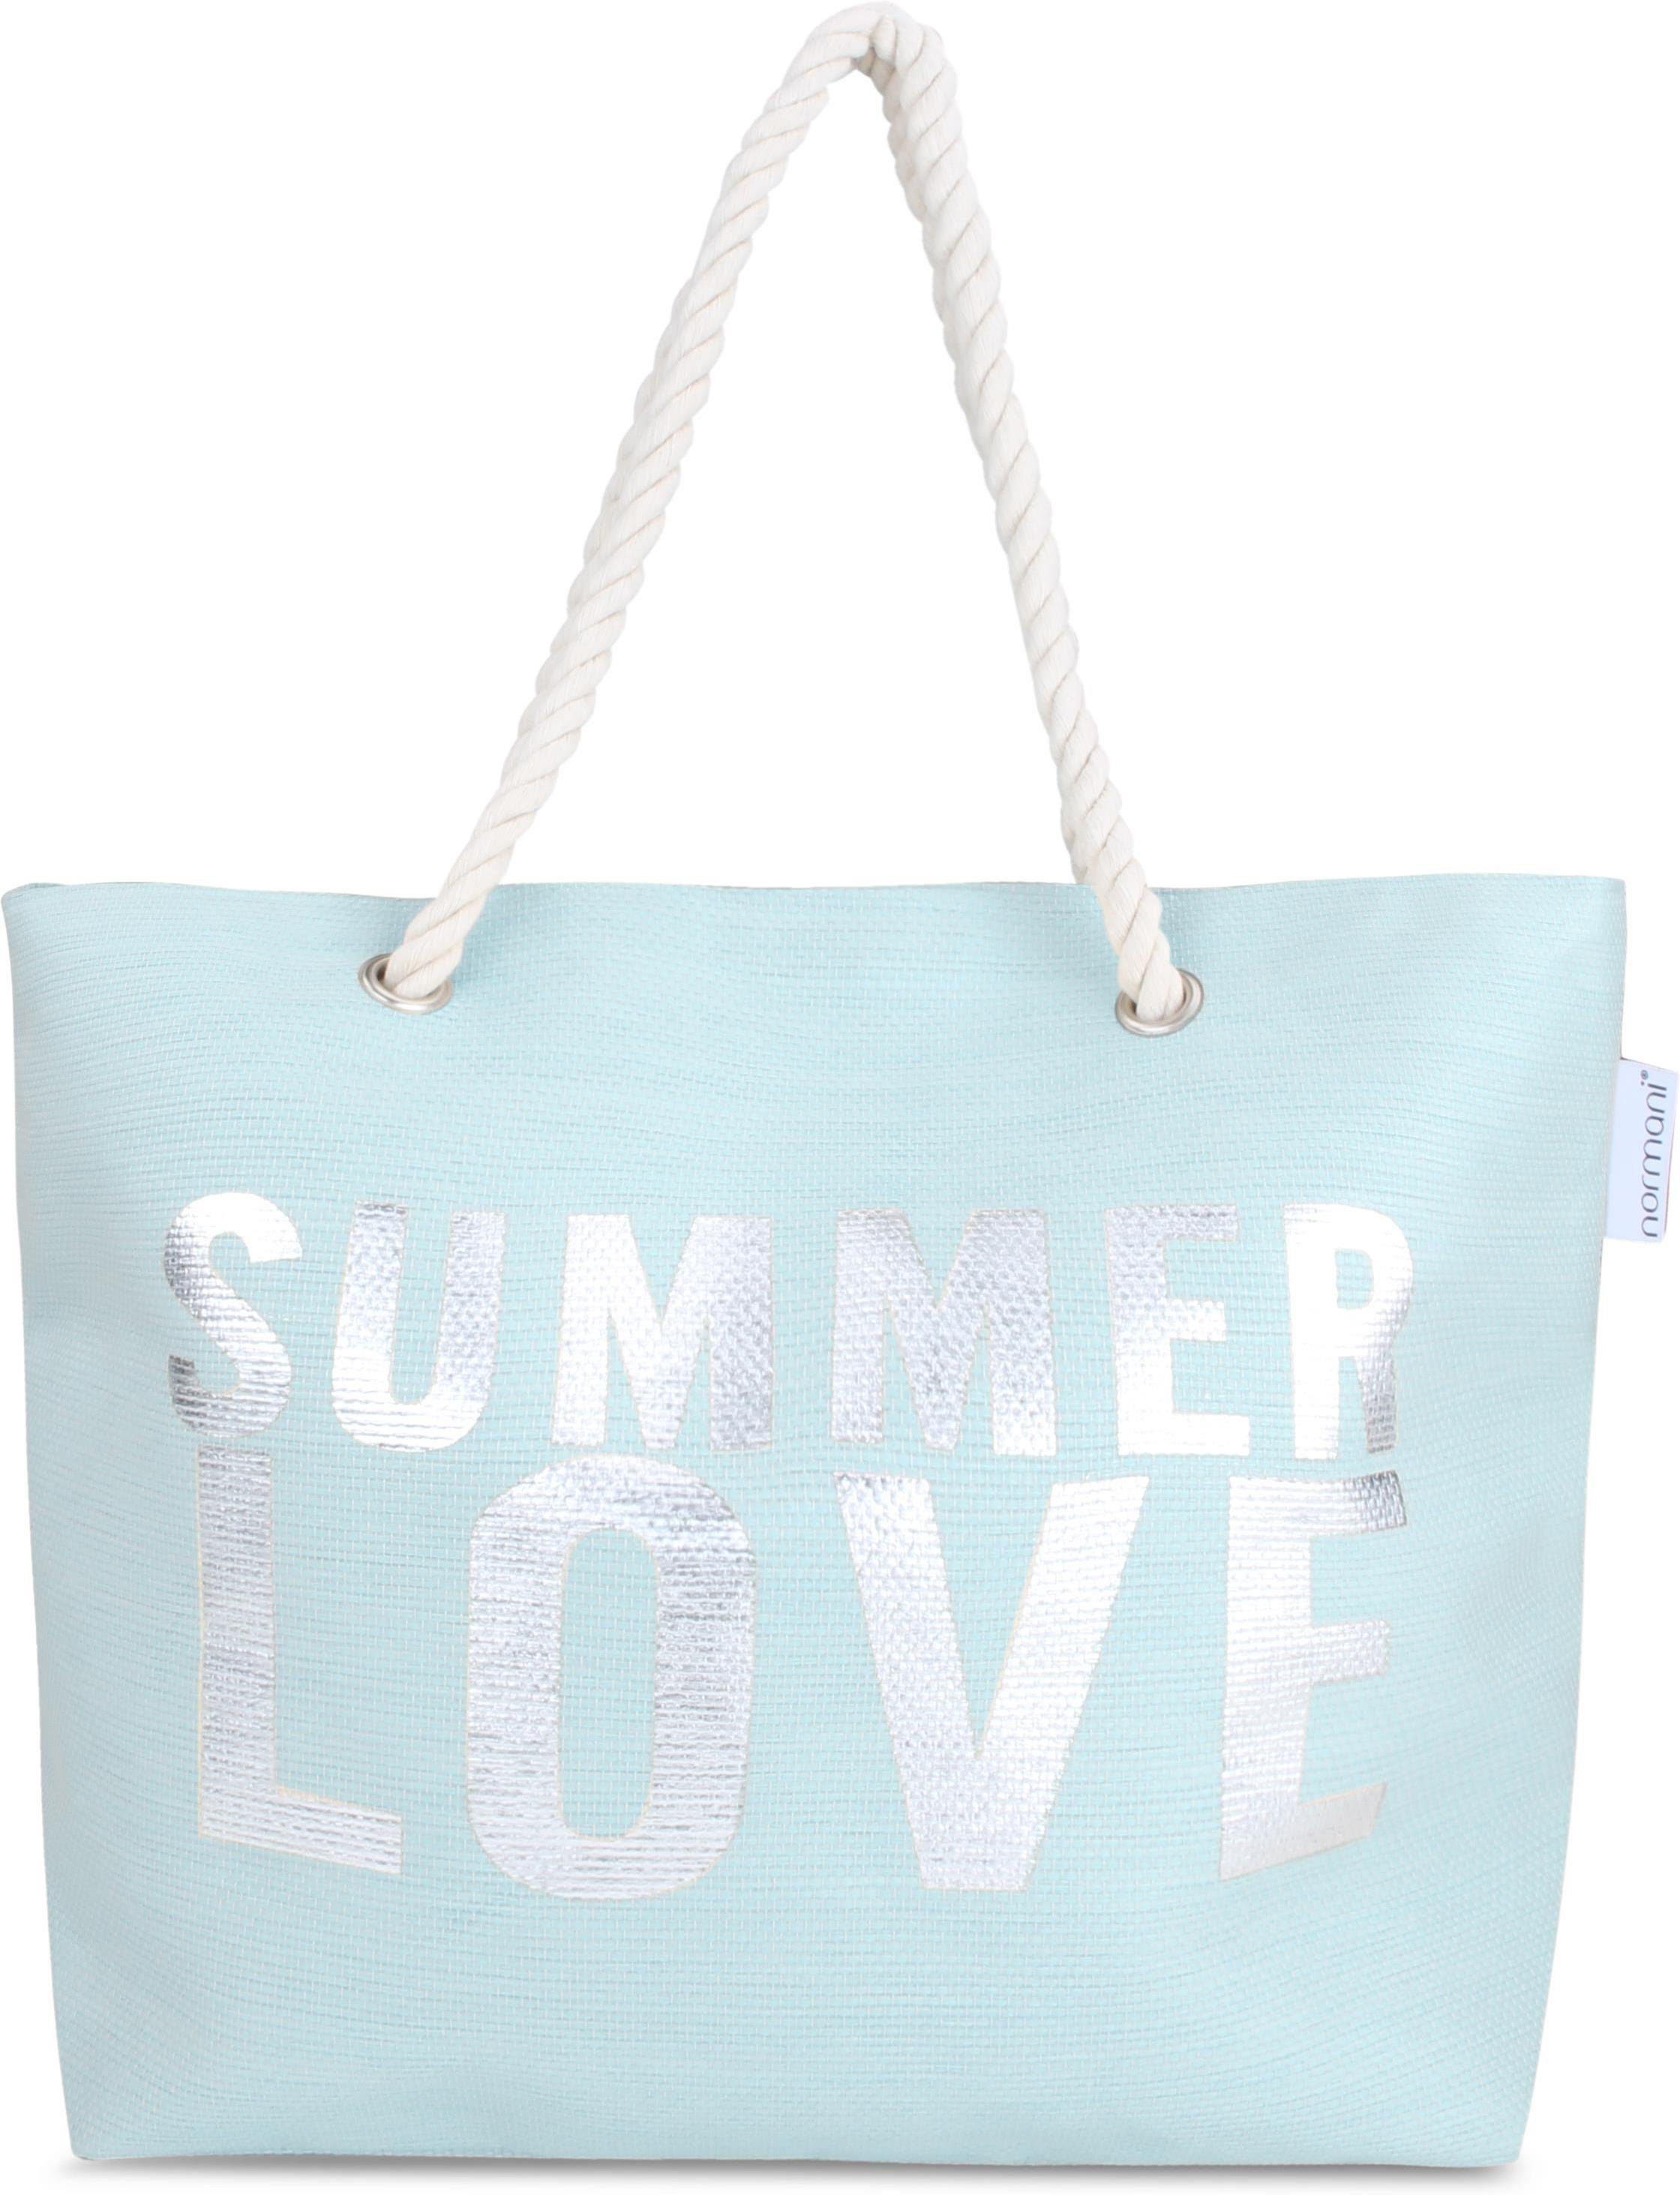 Sommer-Umhängetasche, Henkeltasche Bequeme Strandtasche tragbar Schultertasche als normani Love Strandtasche, Summer Blue